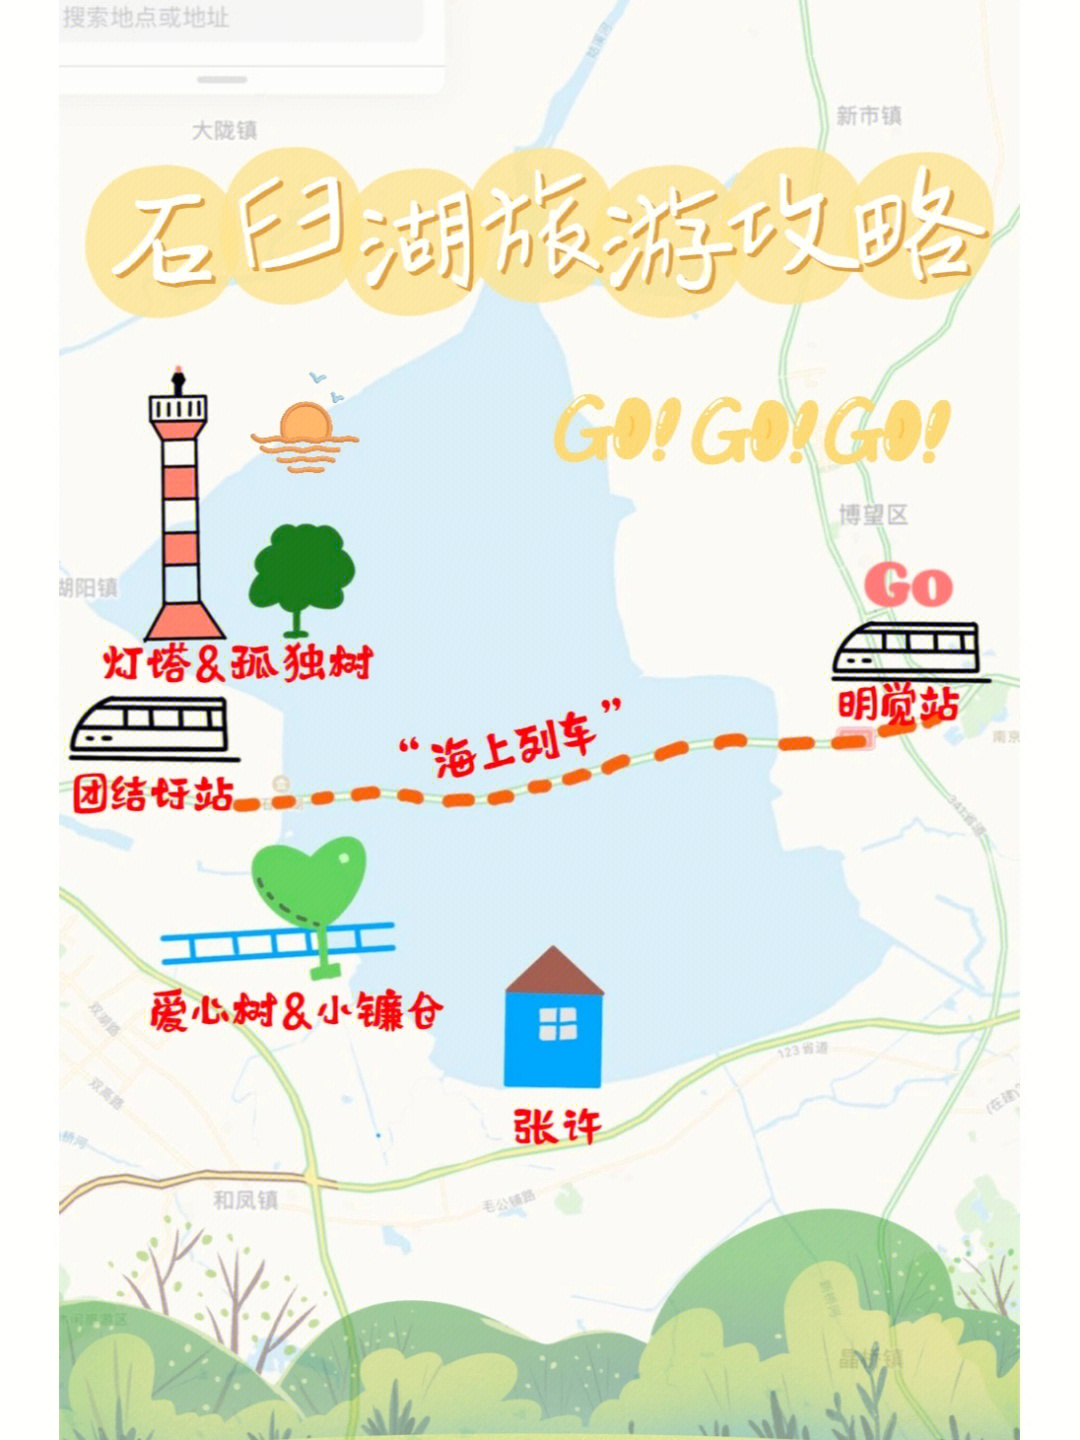 高淳石臼湖旅游攻略图片